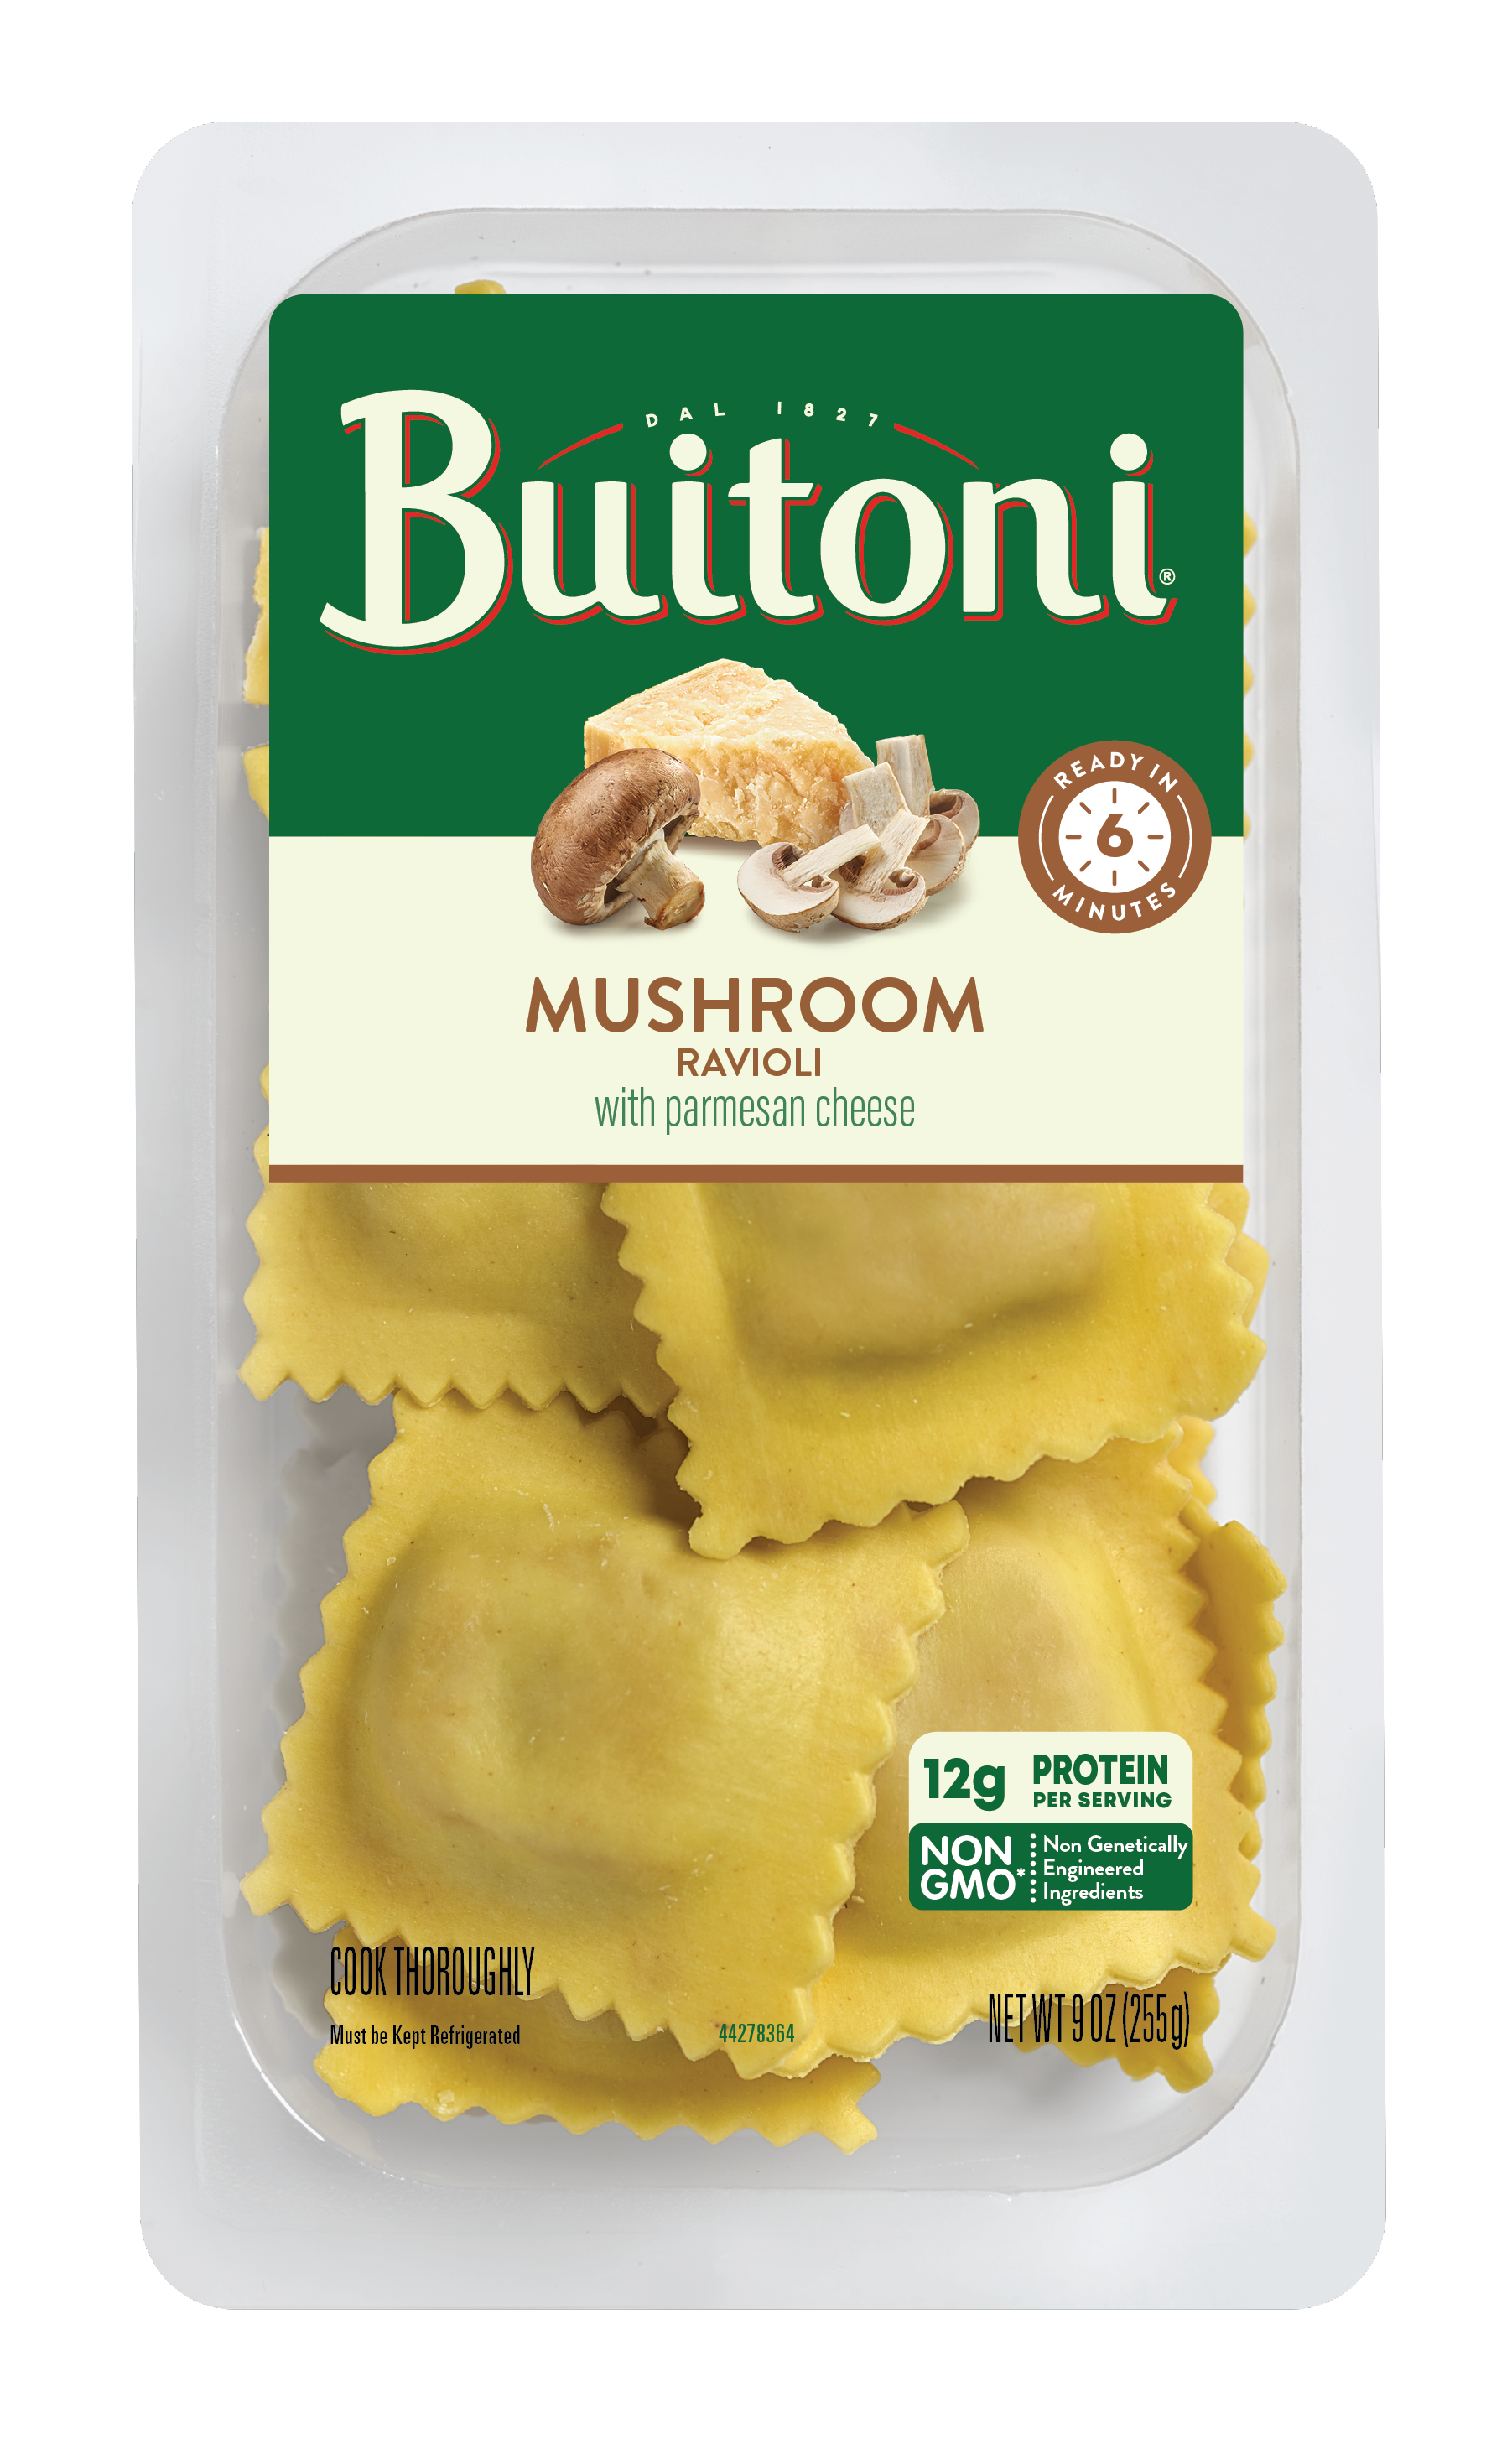 Buitoni 9oz Mushroom Ravioli package